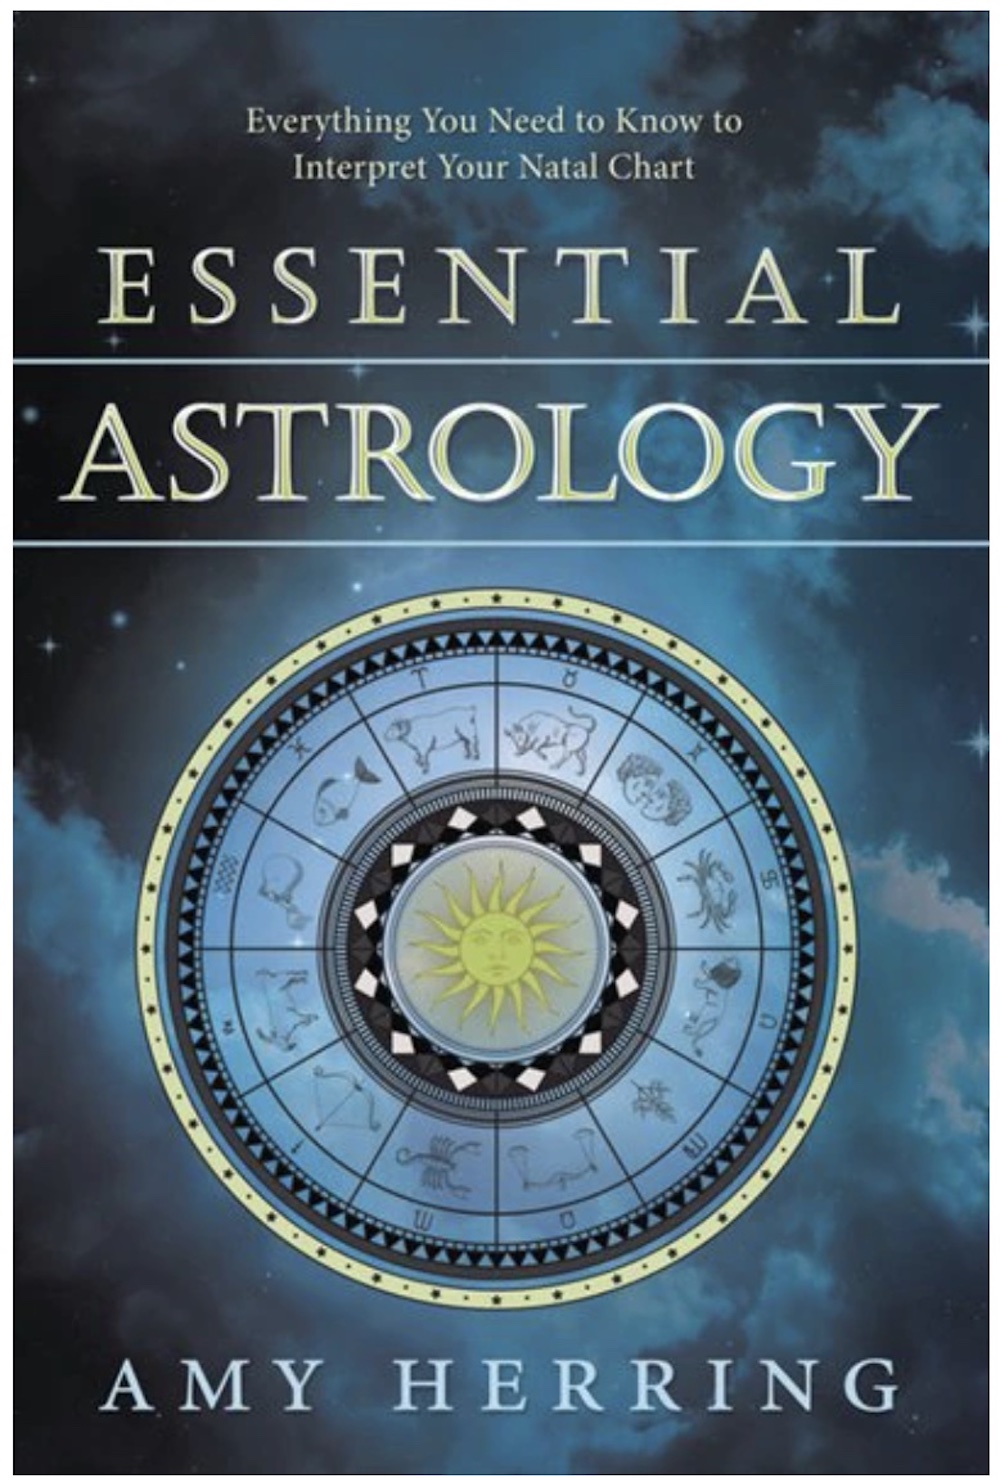 Essential Astrology.